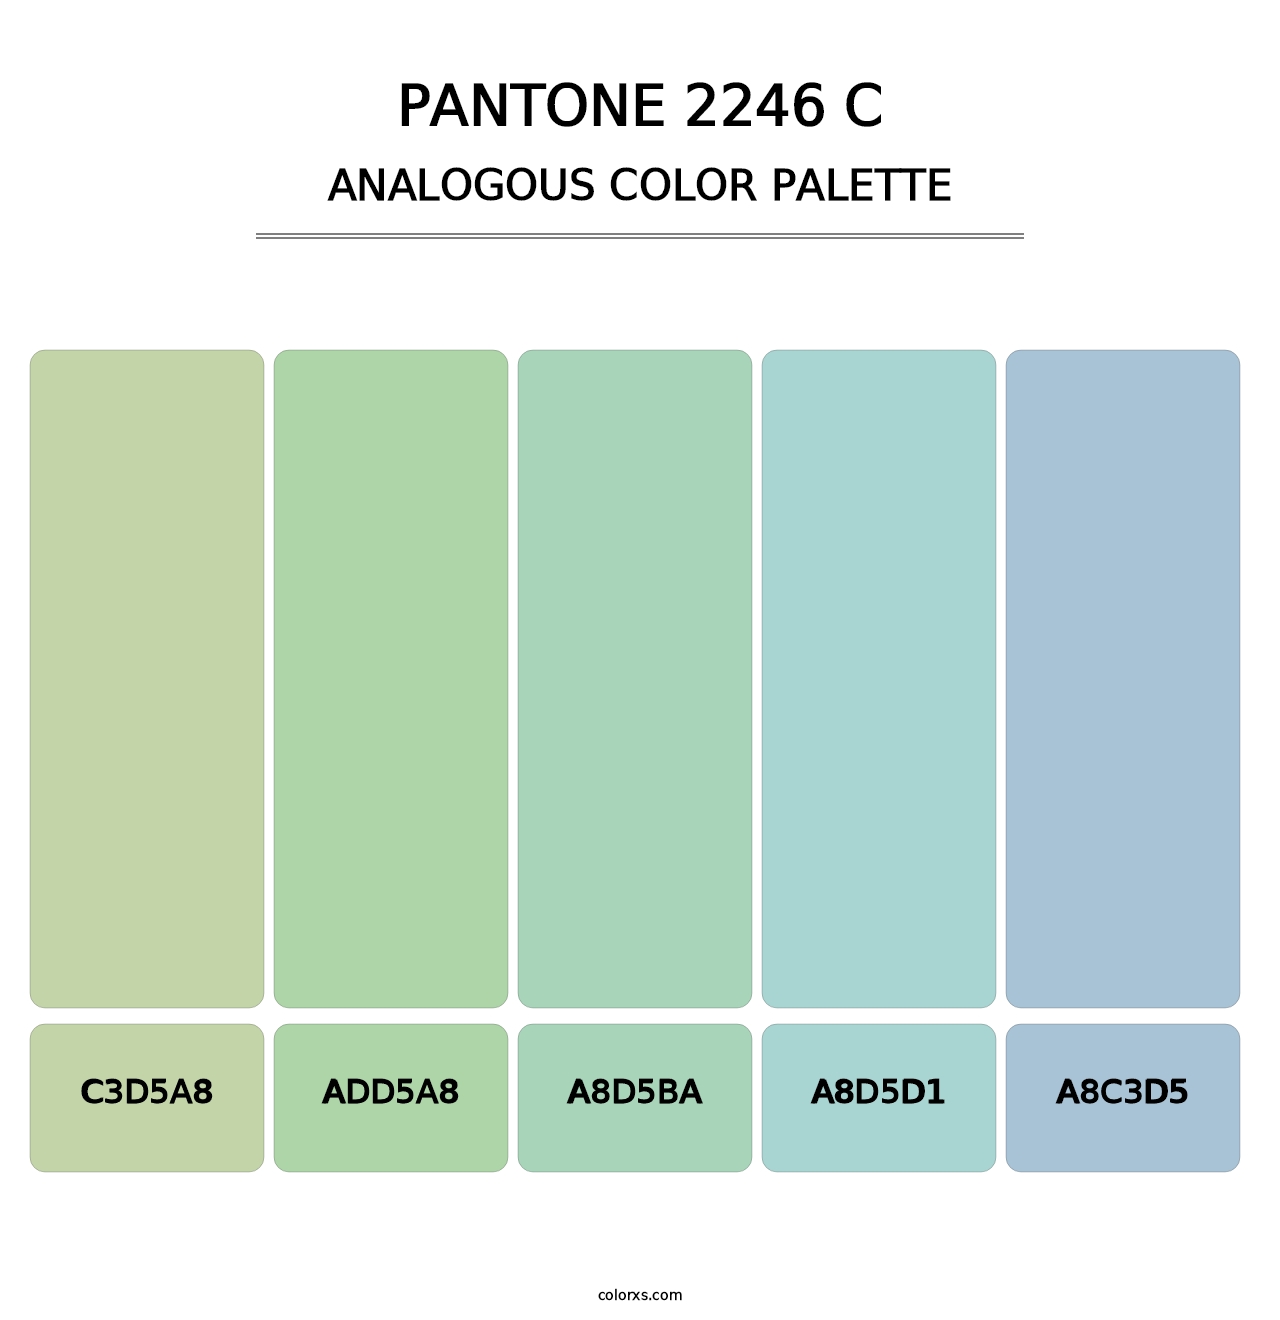 PANTONE 2246 C - Analogous Color Palette